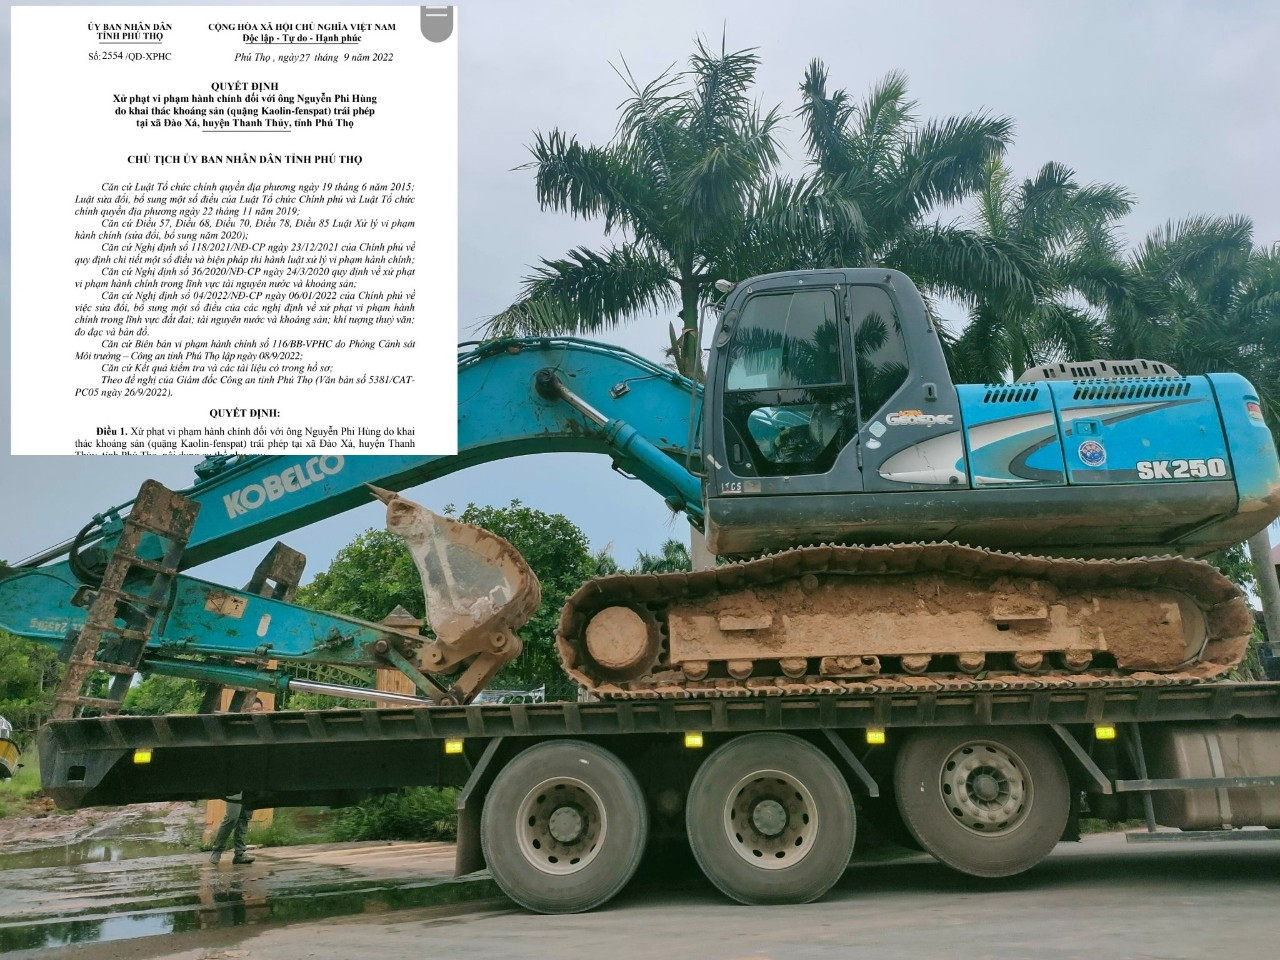 Với hành vi khai thác khoáng sản trái phép, Nguyễn Phi Hùng đã bị xử phạt với số tiền hơn 4,5 tỷ đồng